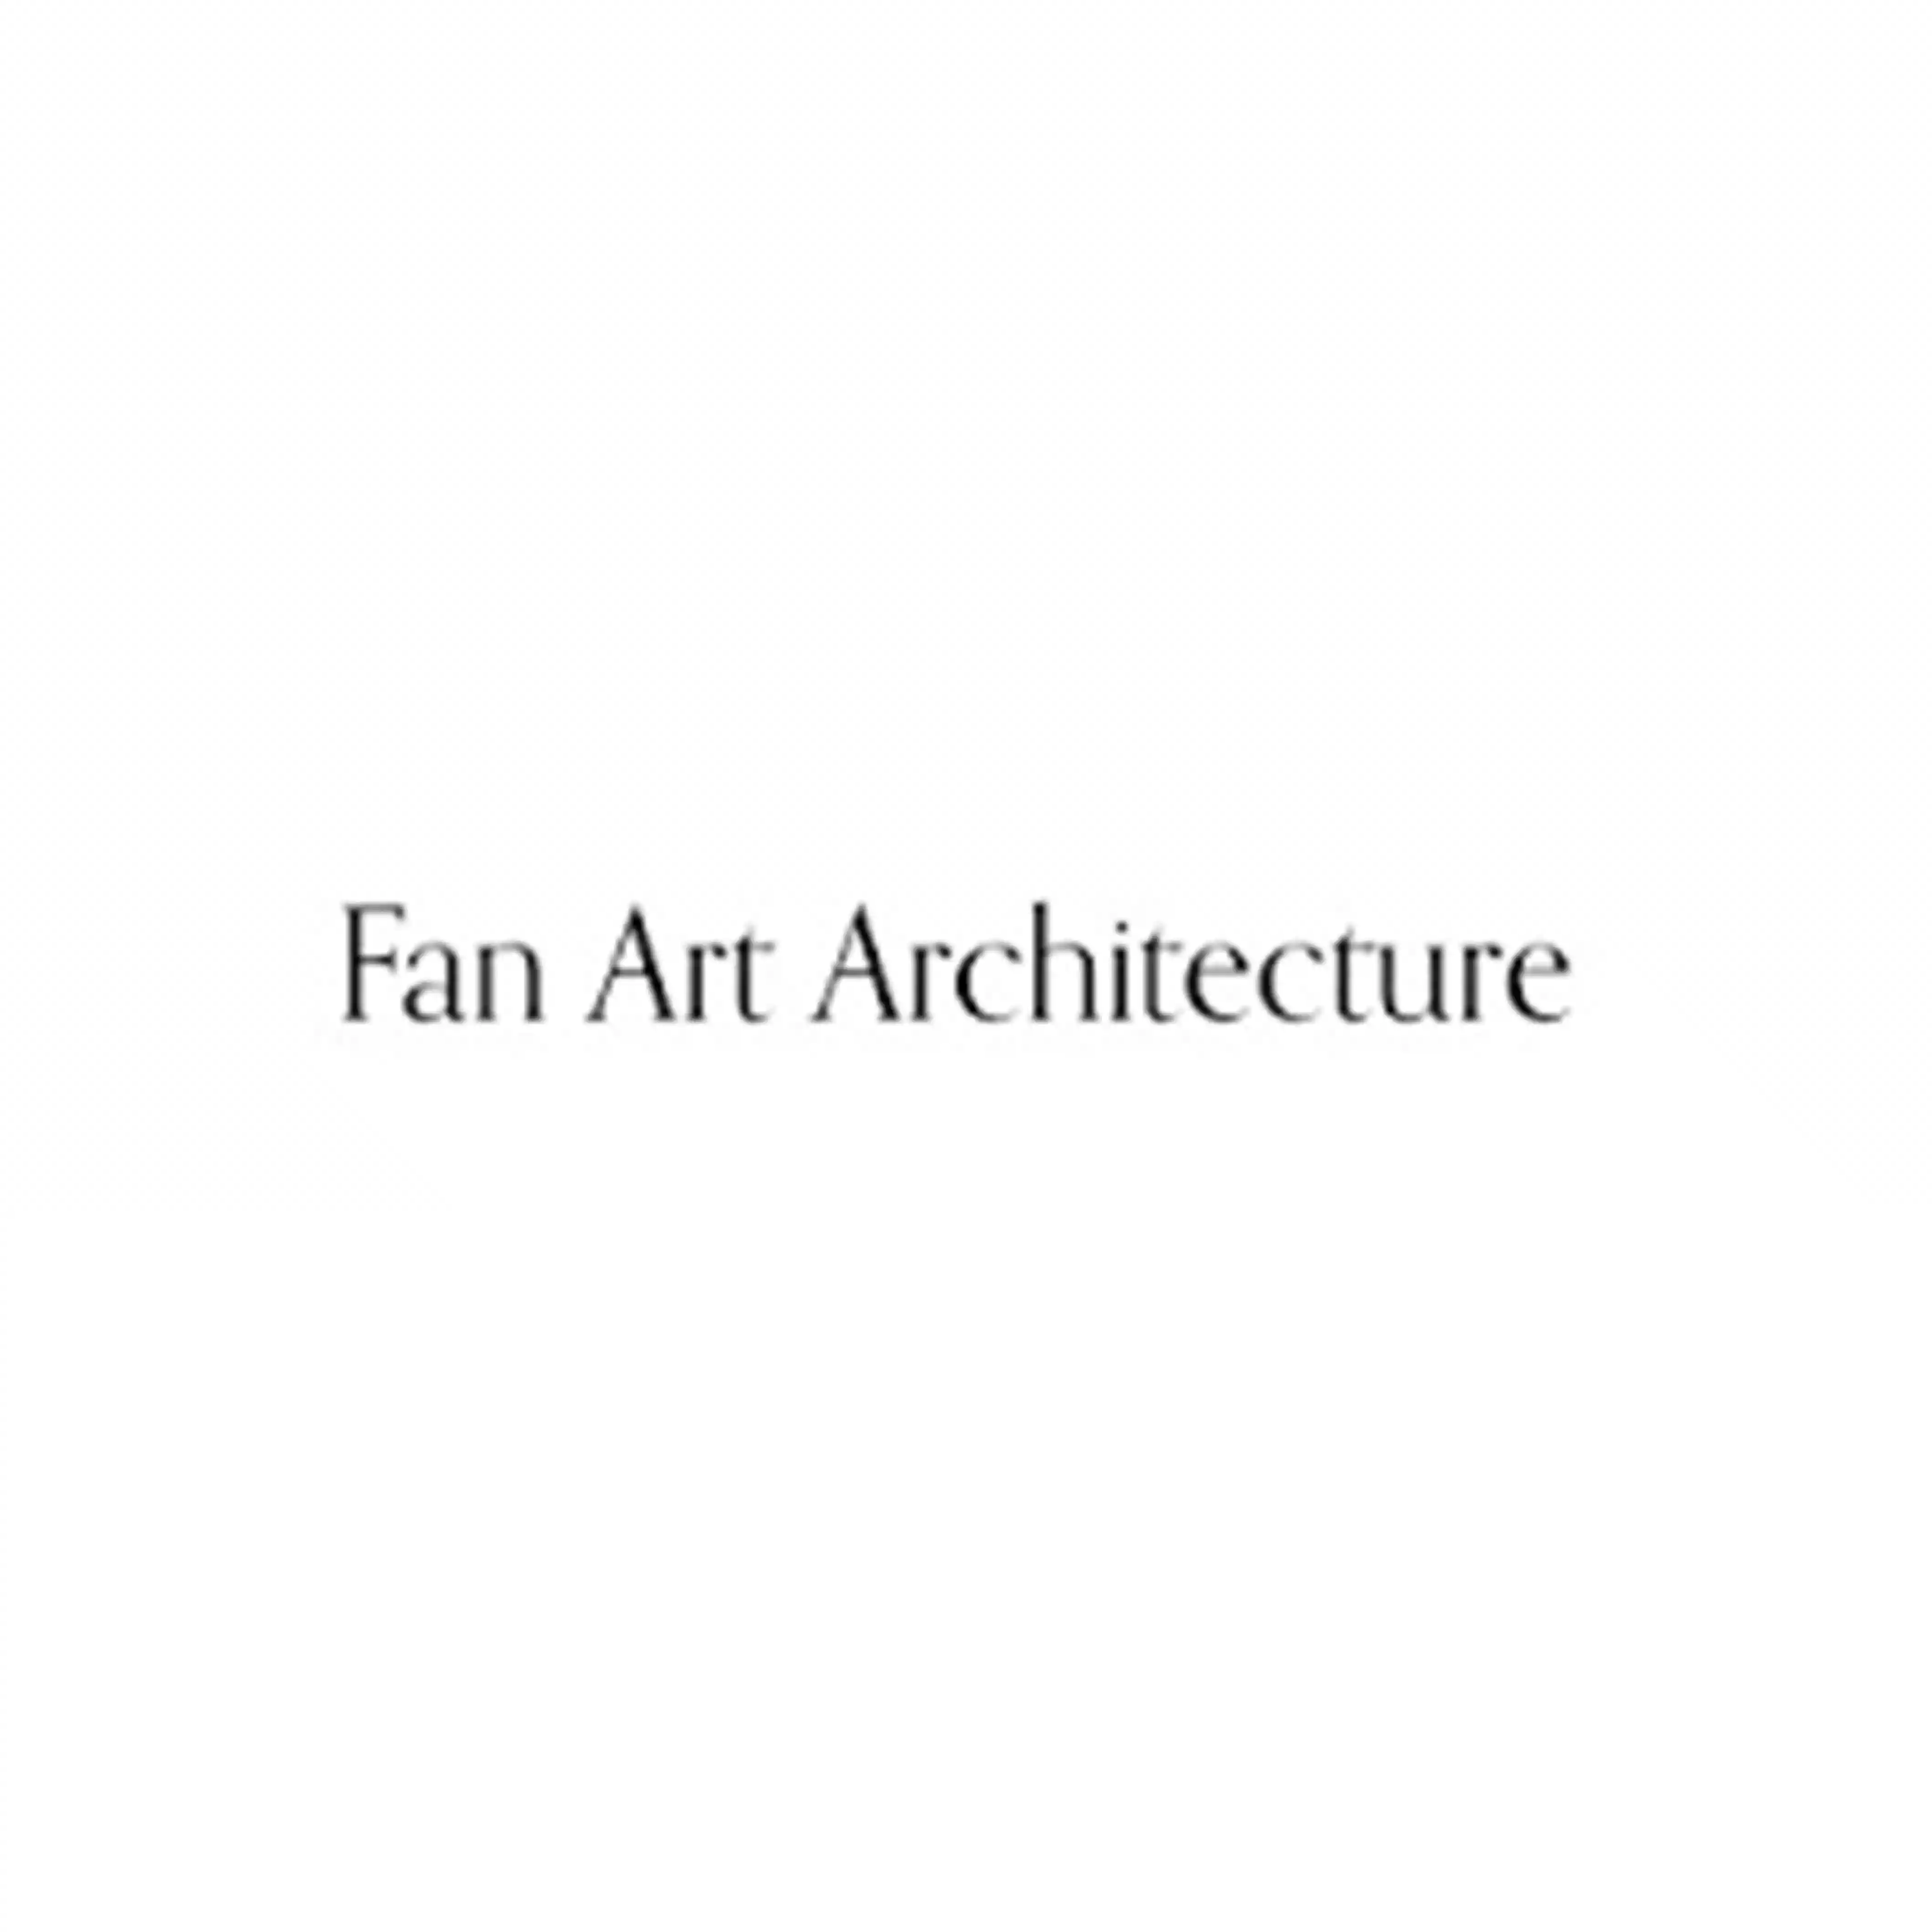 Fan Art Architecture logo